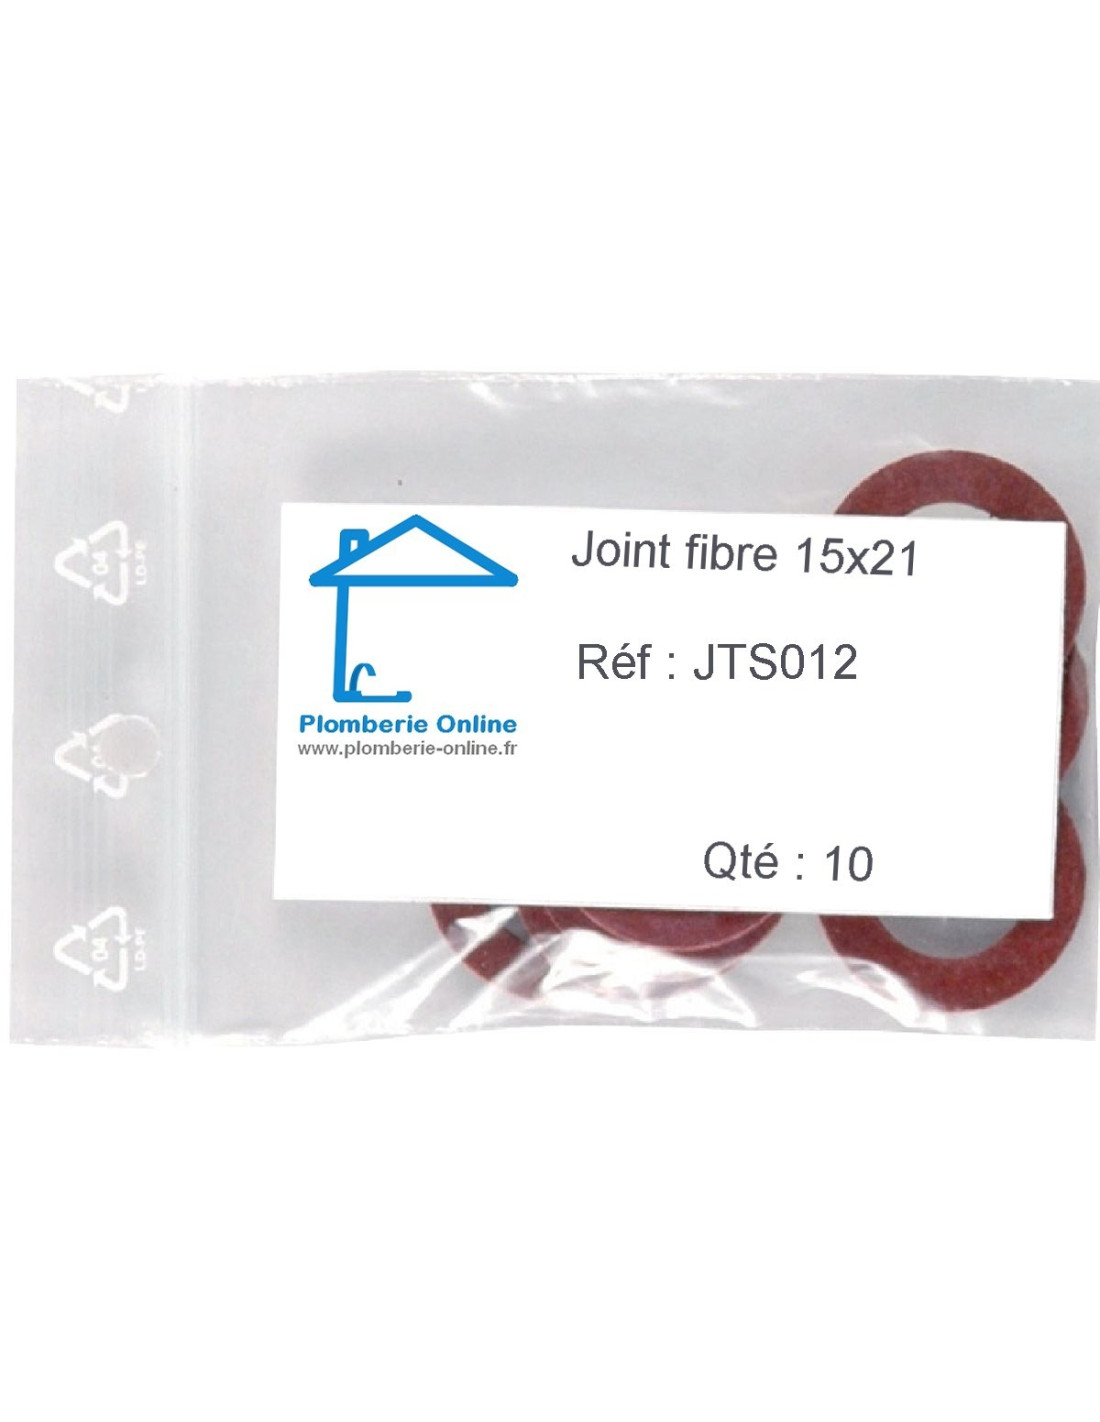 100 Joints ACS fibre vulcanisé rouge épaisseur 1,5mm - 1